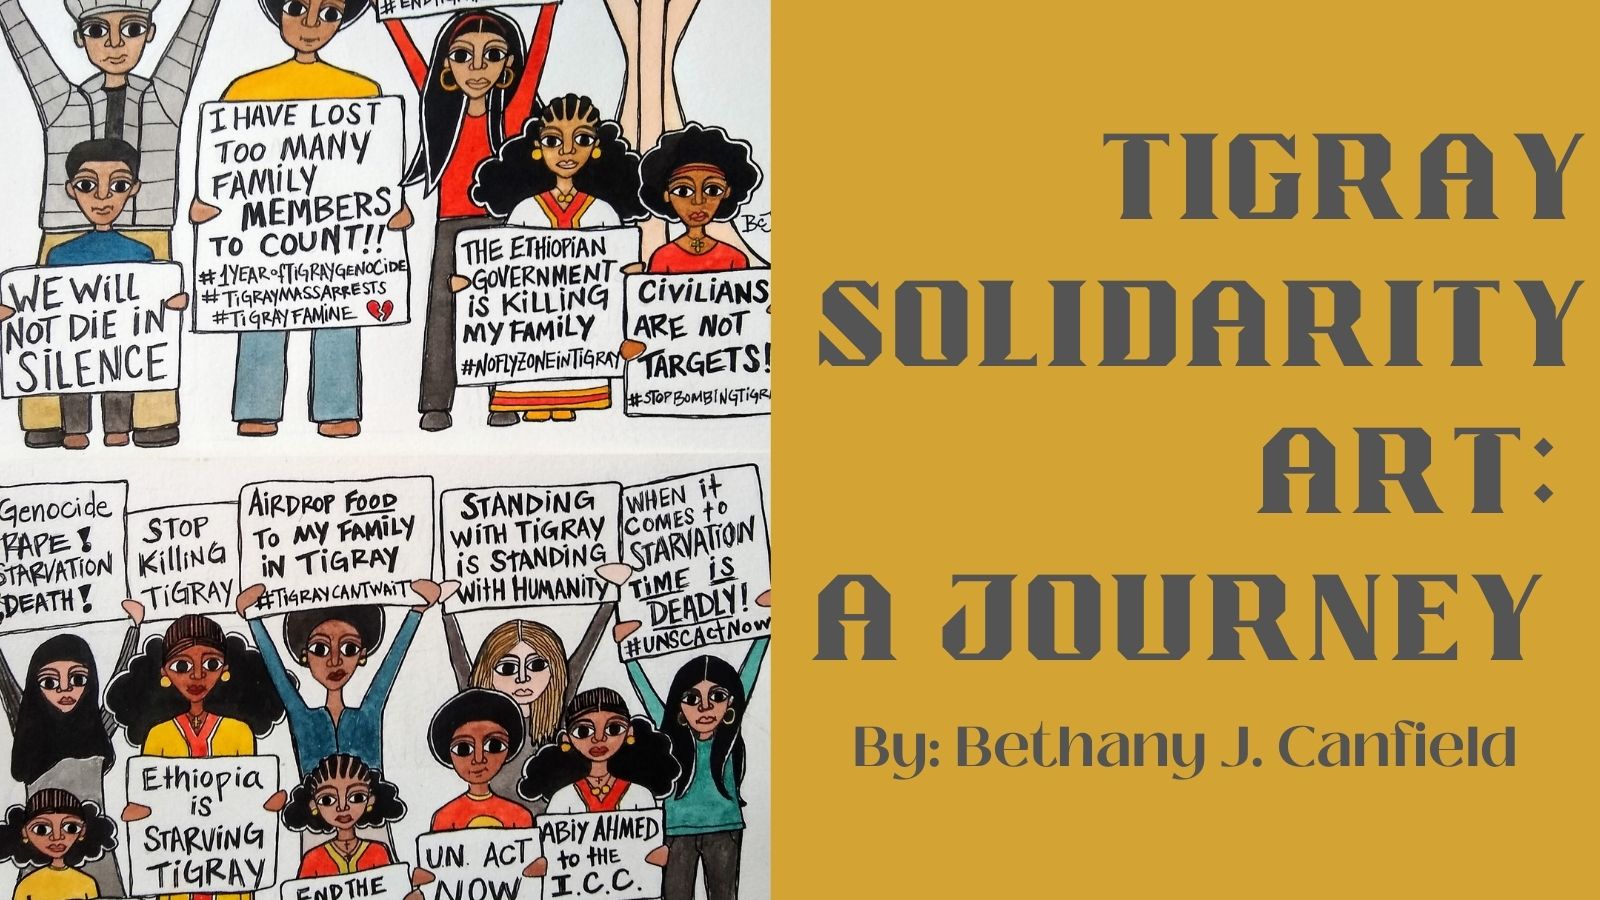 Tigray Solidarity Art: A Journey